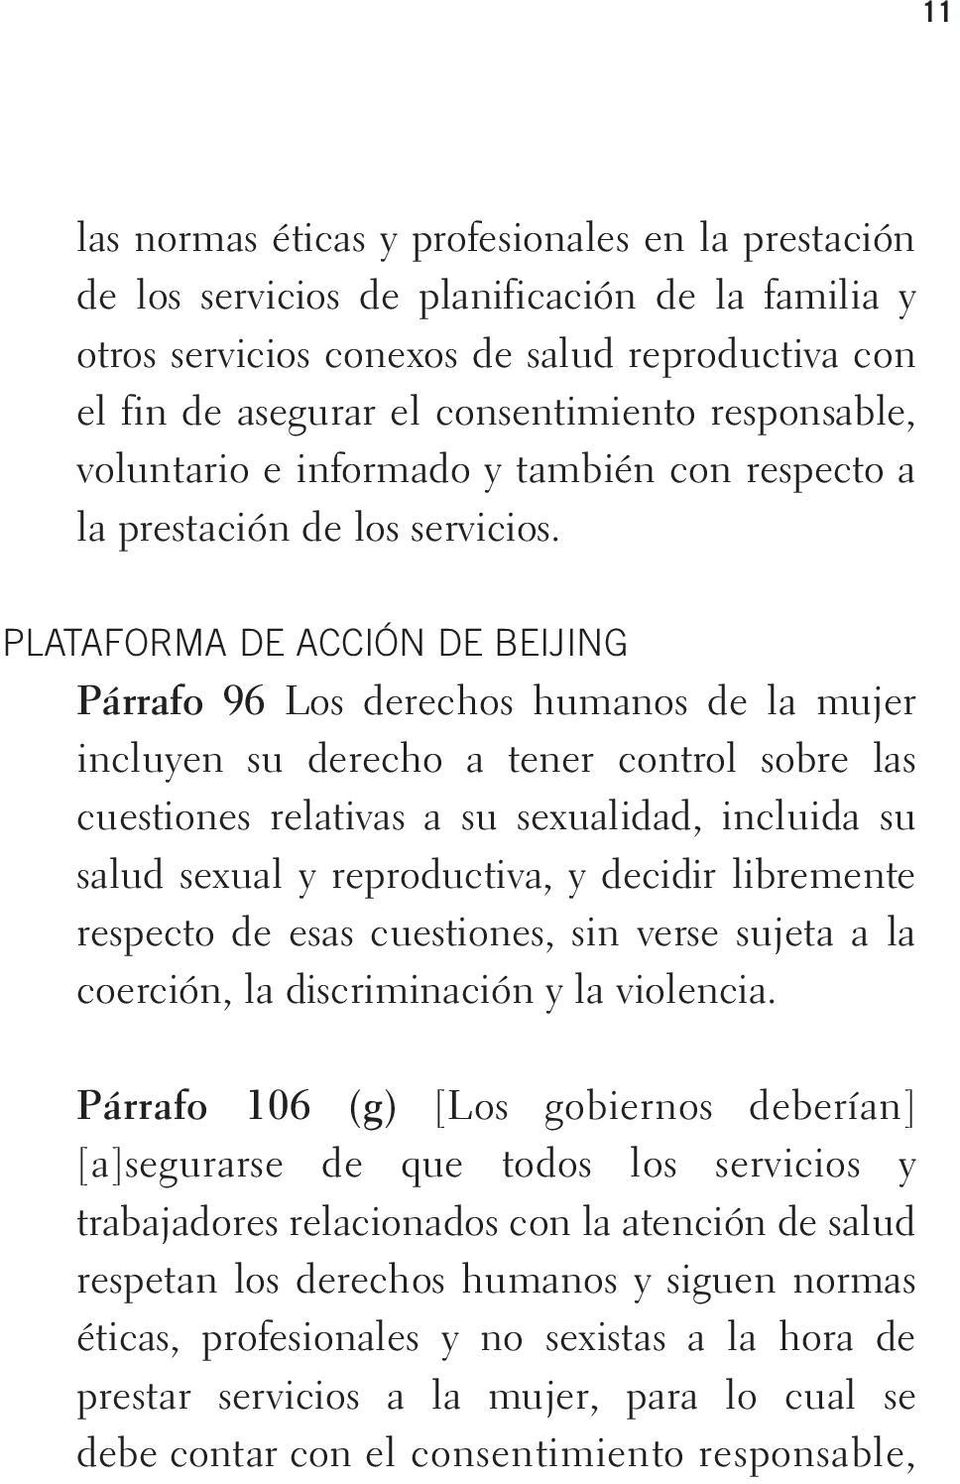 PLATAFORMA DE ACCIÓN DE BEIJING Párrafo 96 Los derechos humanos de la mujer incluyen su derecho a tener control sobre las cuestiones relativas a su sexualidad, incluida su salud sexual y